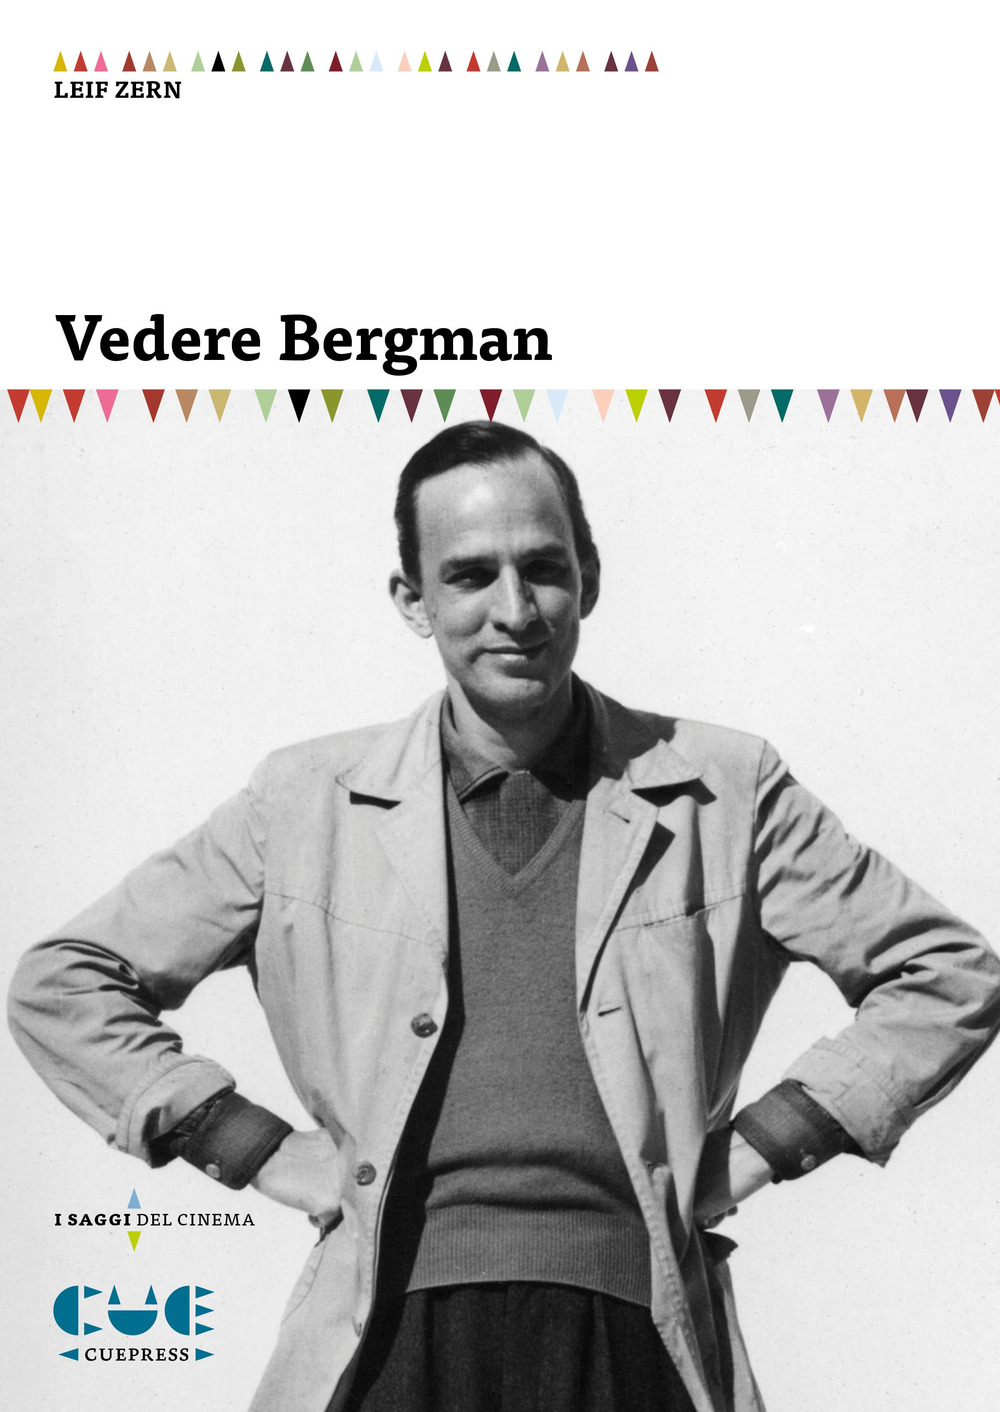 Libri Leif Zern - Vedere Bergman NUOVO SIGILLATO, EDIZIONE DEL 23/11/2018 SUBITO DISPONIBILE